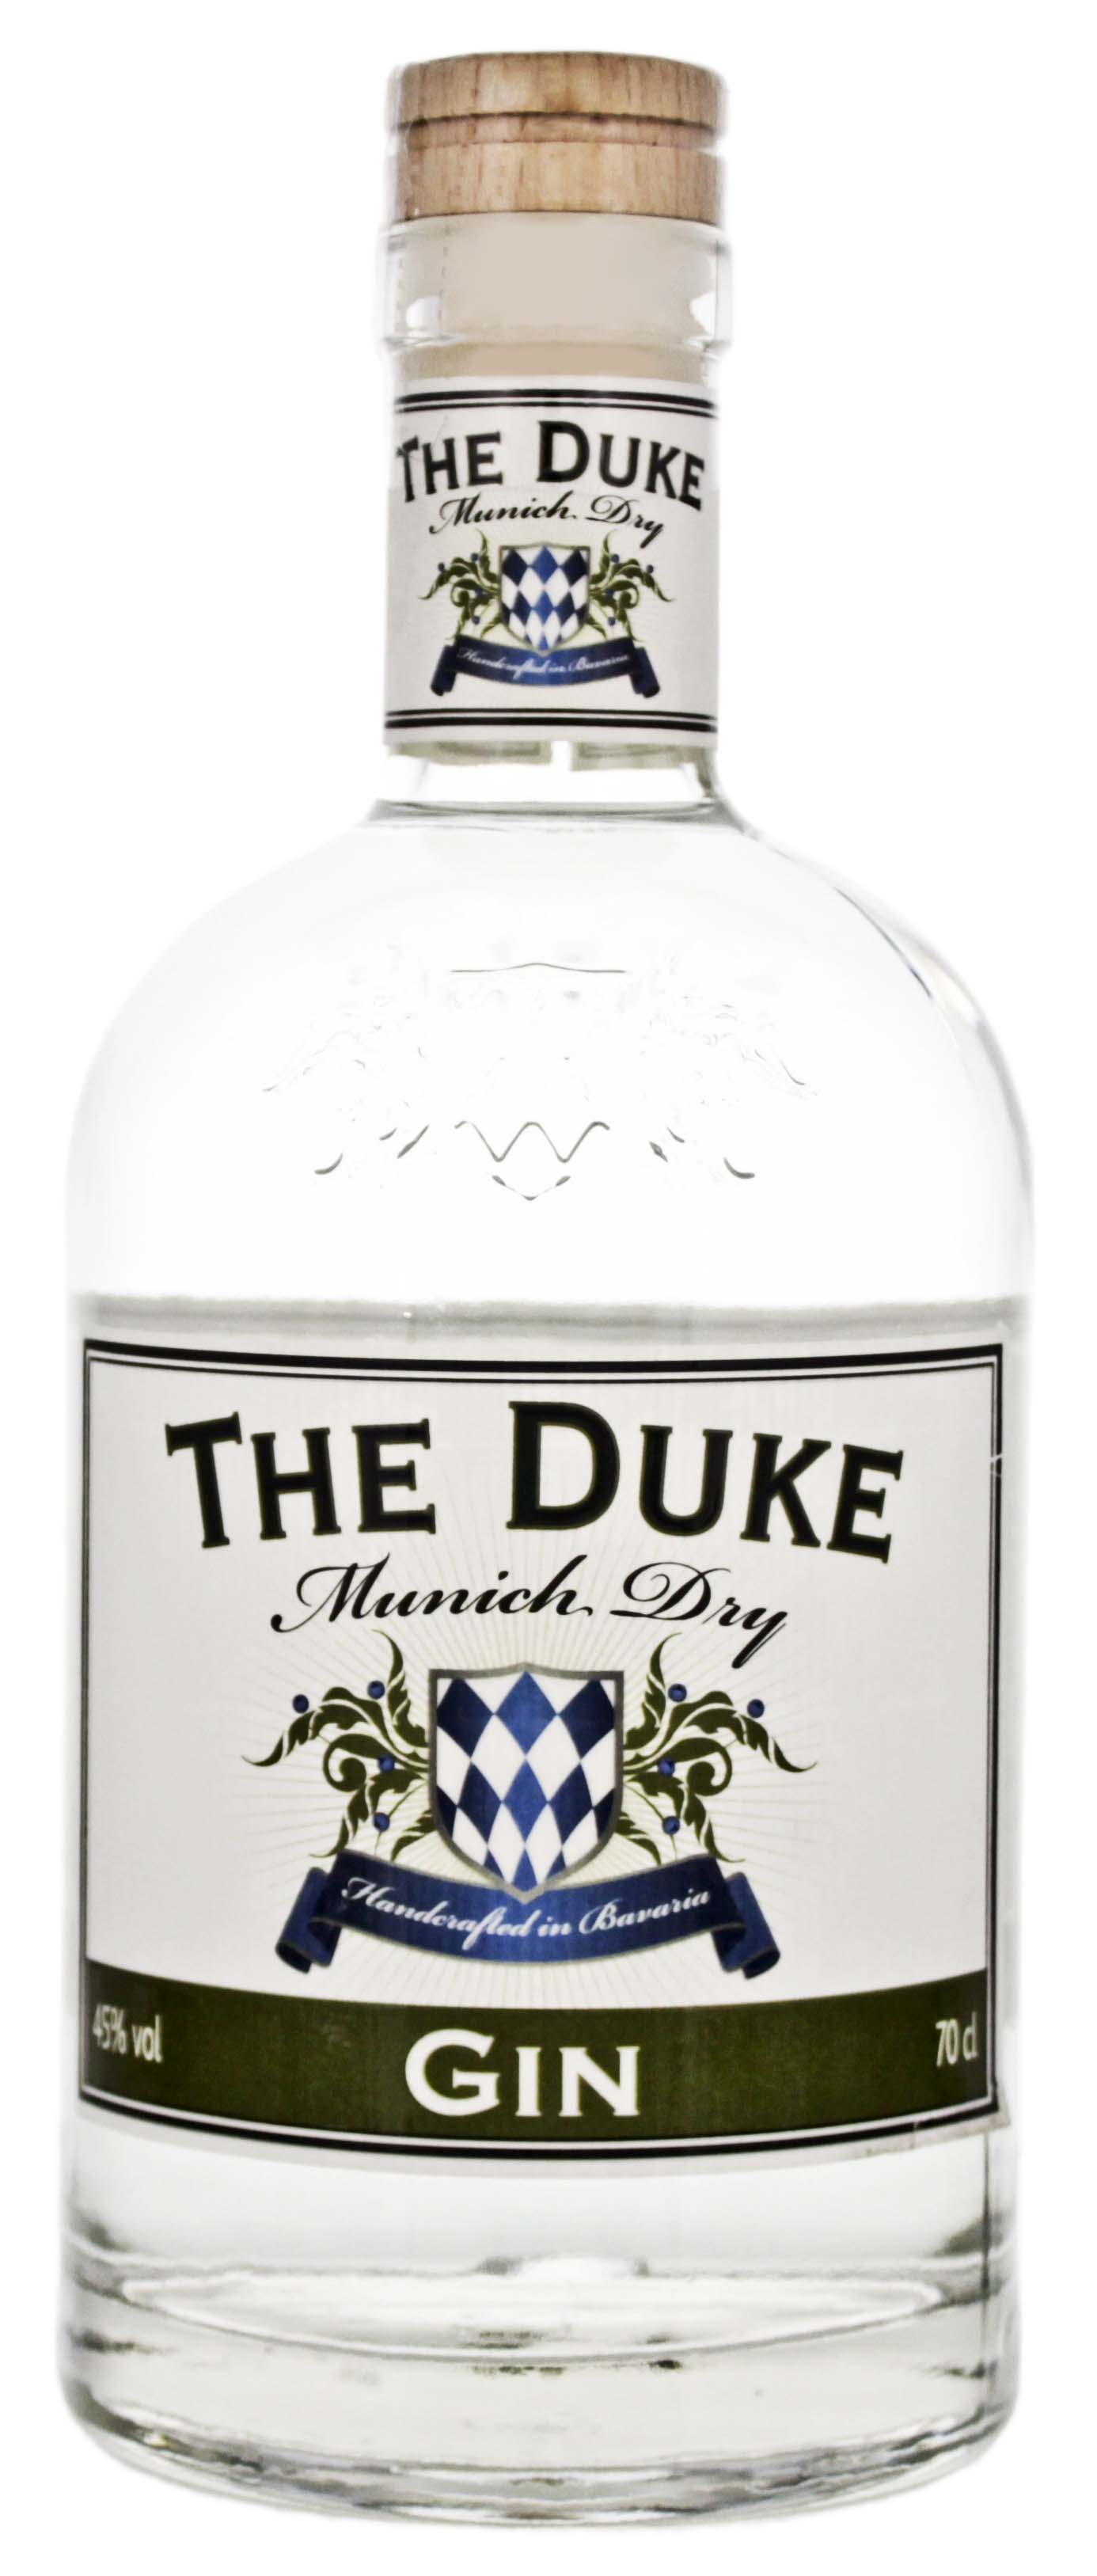 Shop kaufen! & Dry Spirituosen Gin Online Munich jetzt The Duke Gin